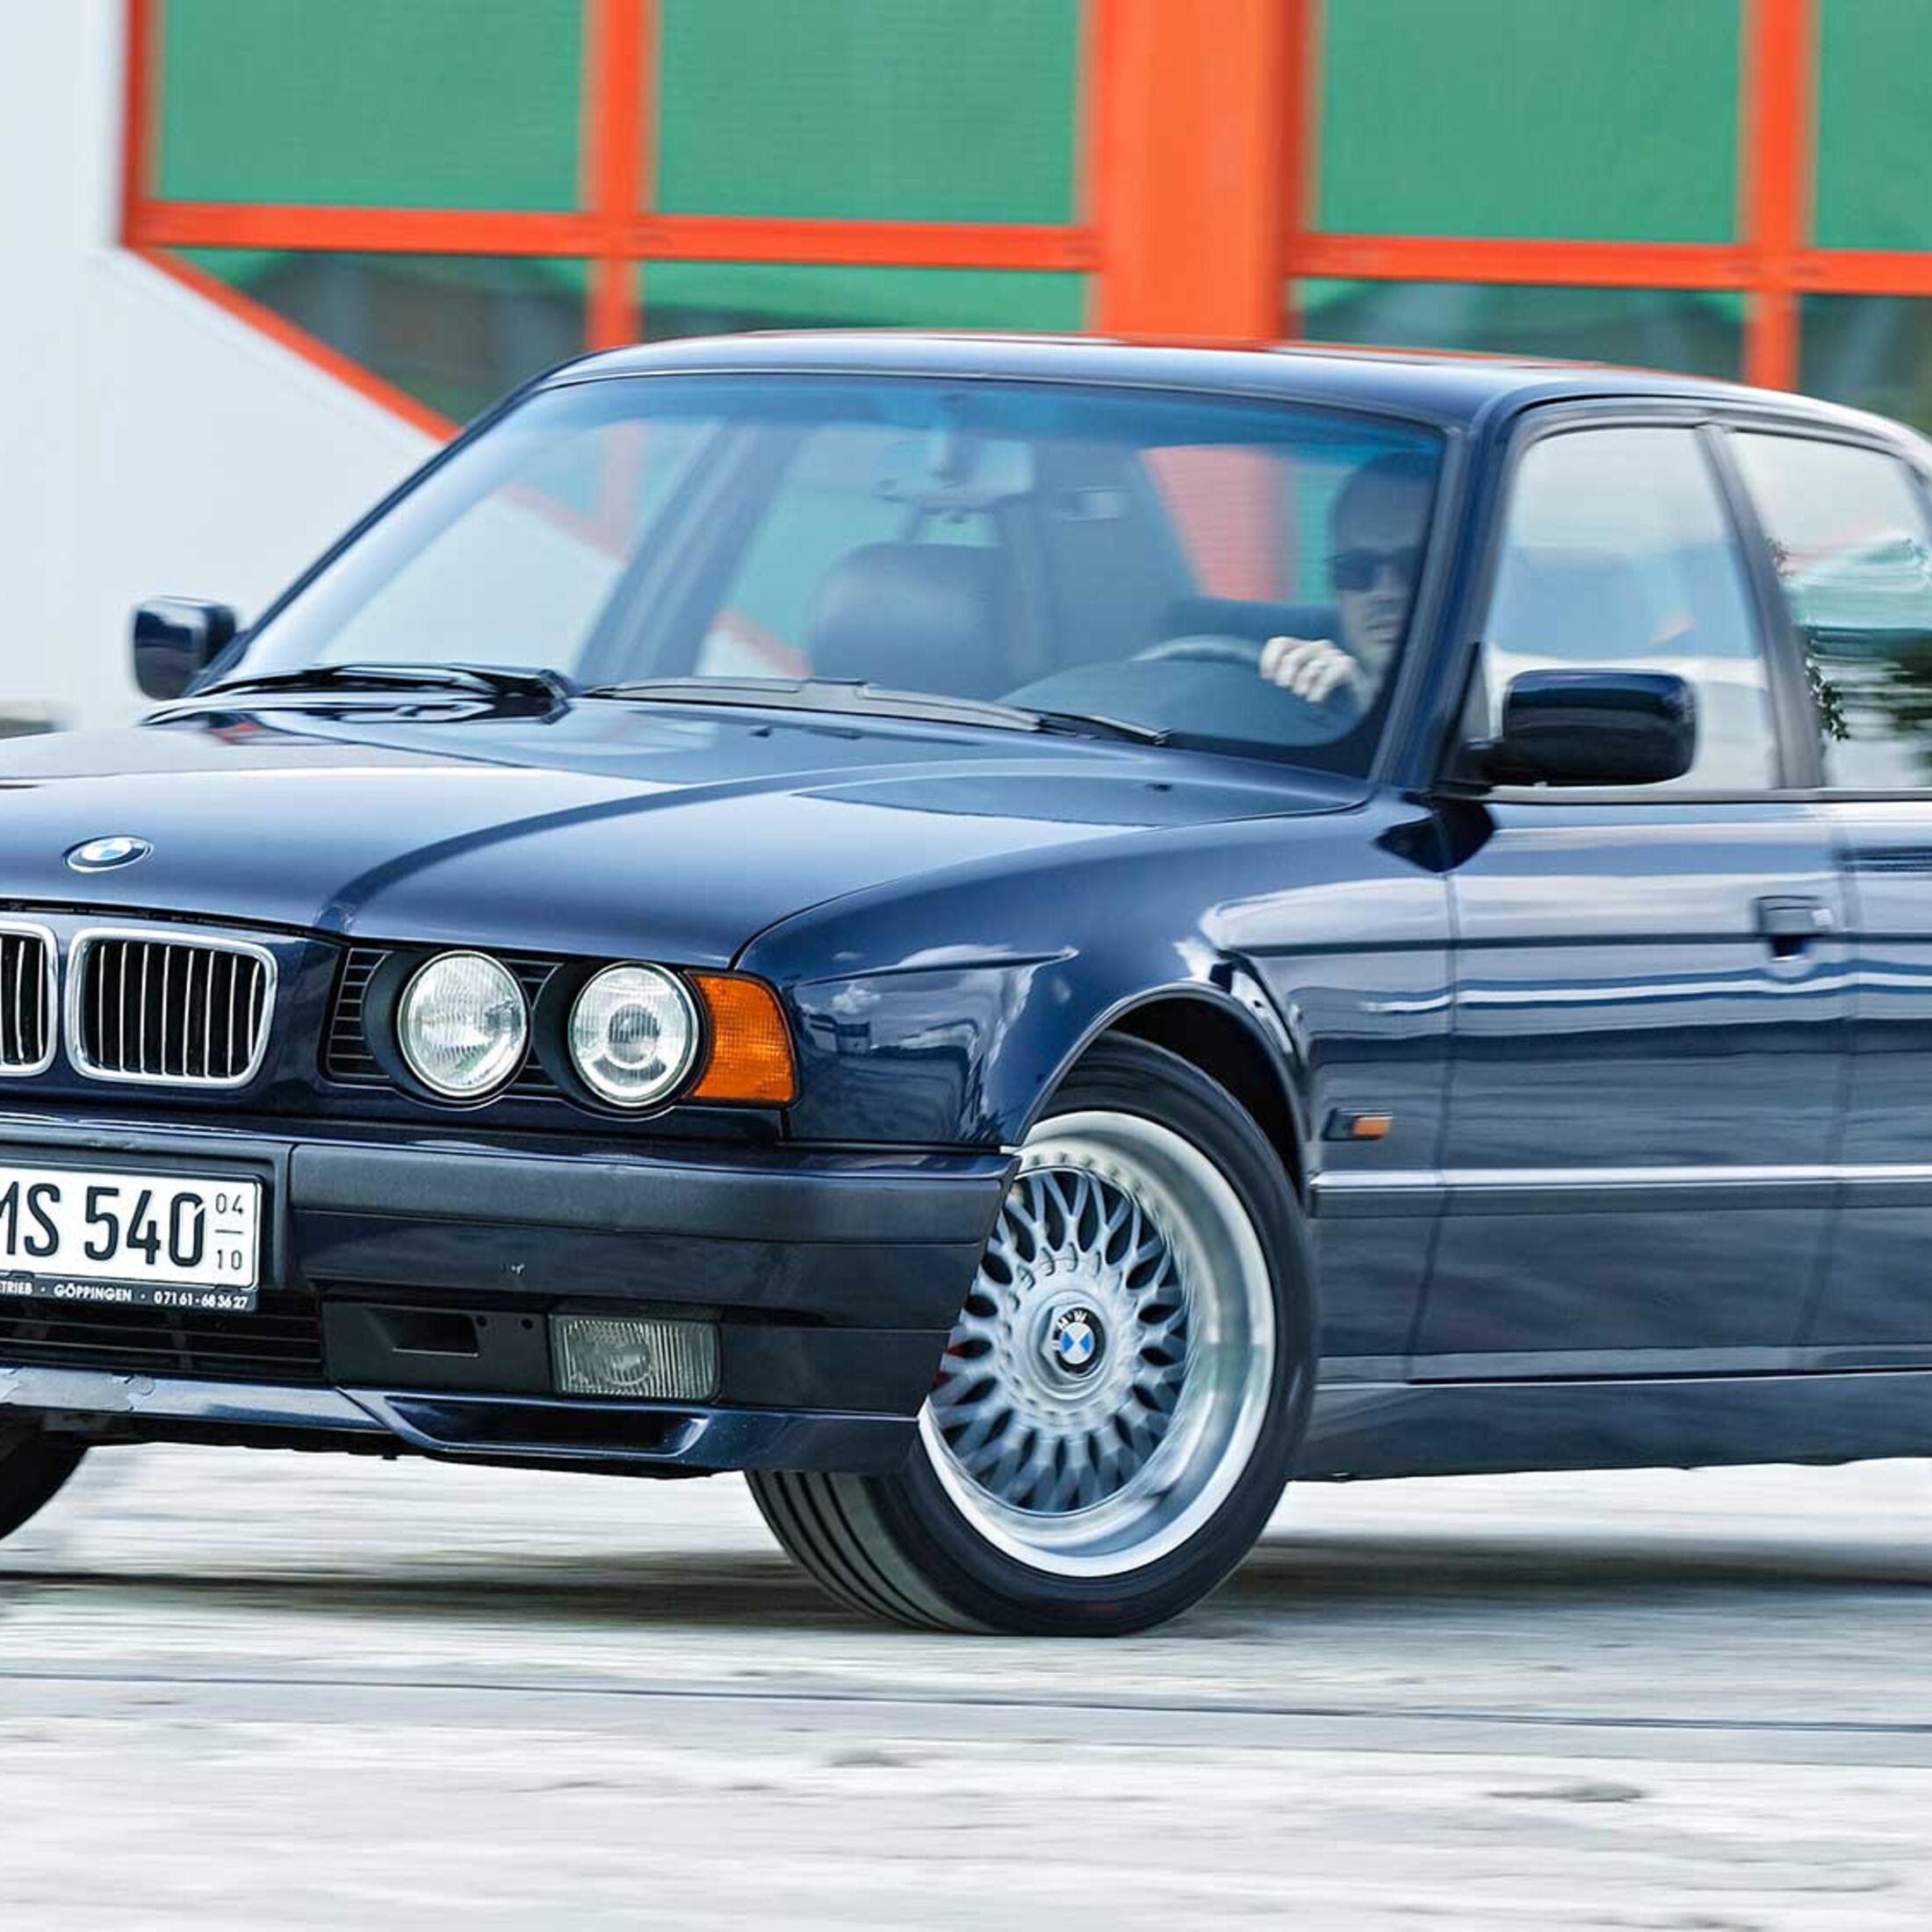 Die Geschichte des BMW E34: Ein dauerhafter Klassiker - Vintauto-BMW Clásico